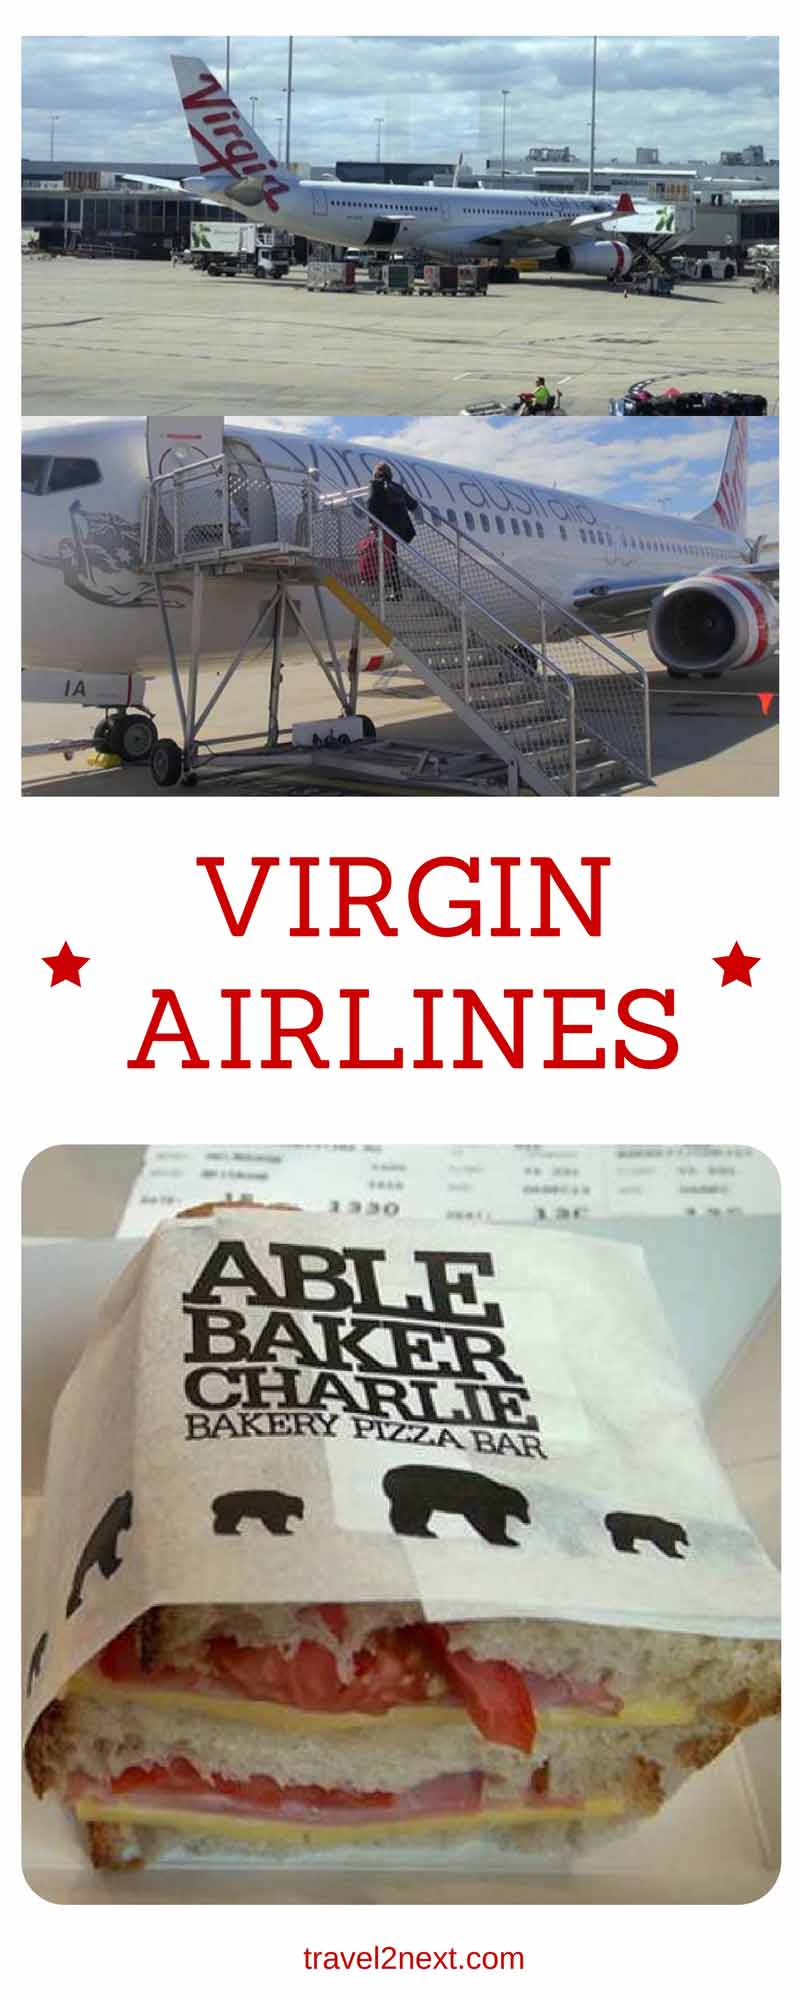 Virgin Airlines video